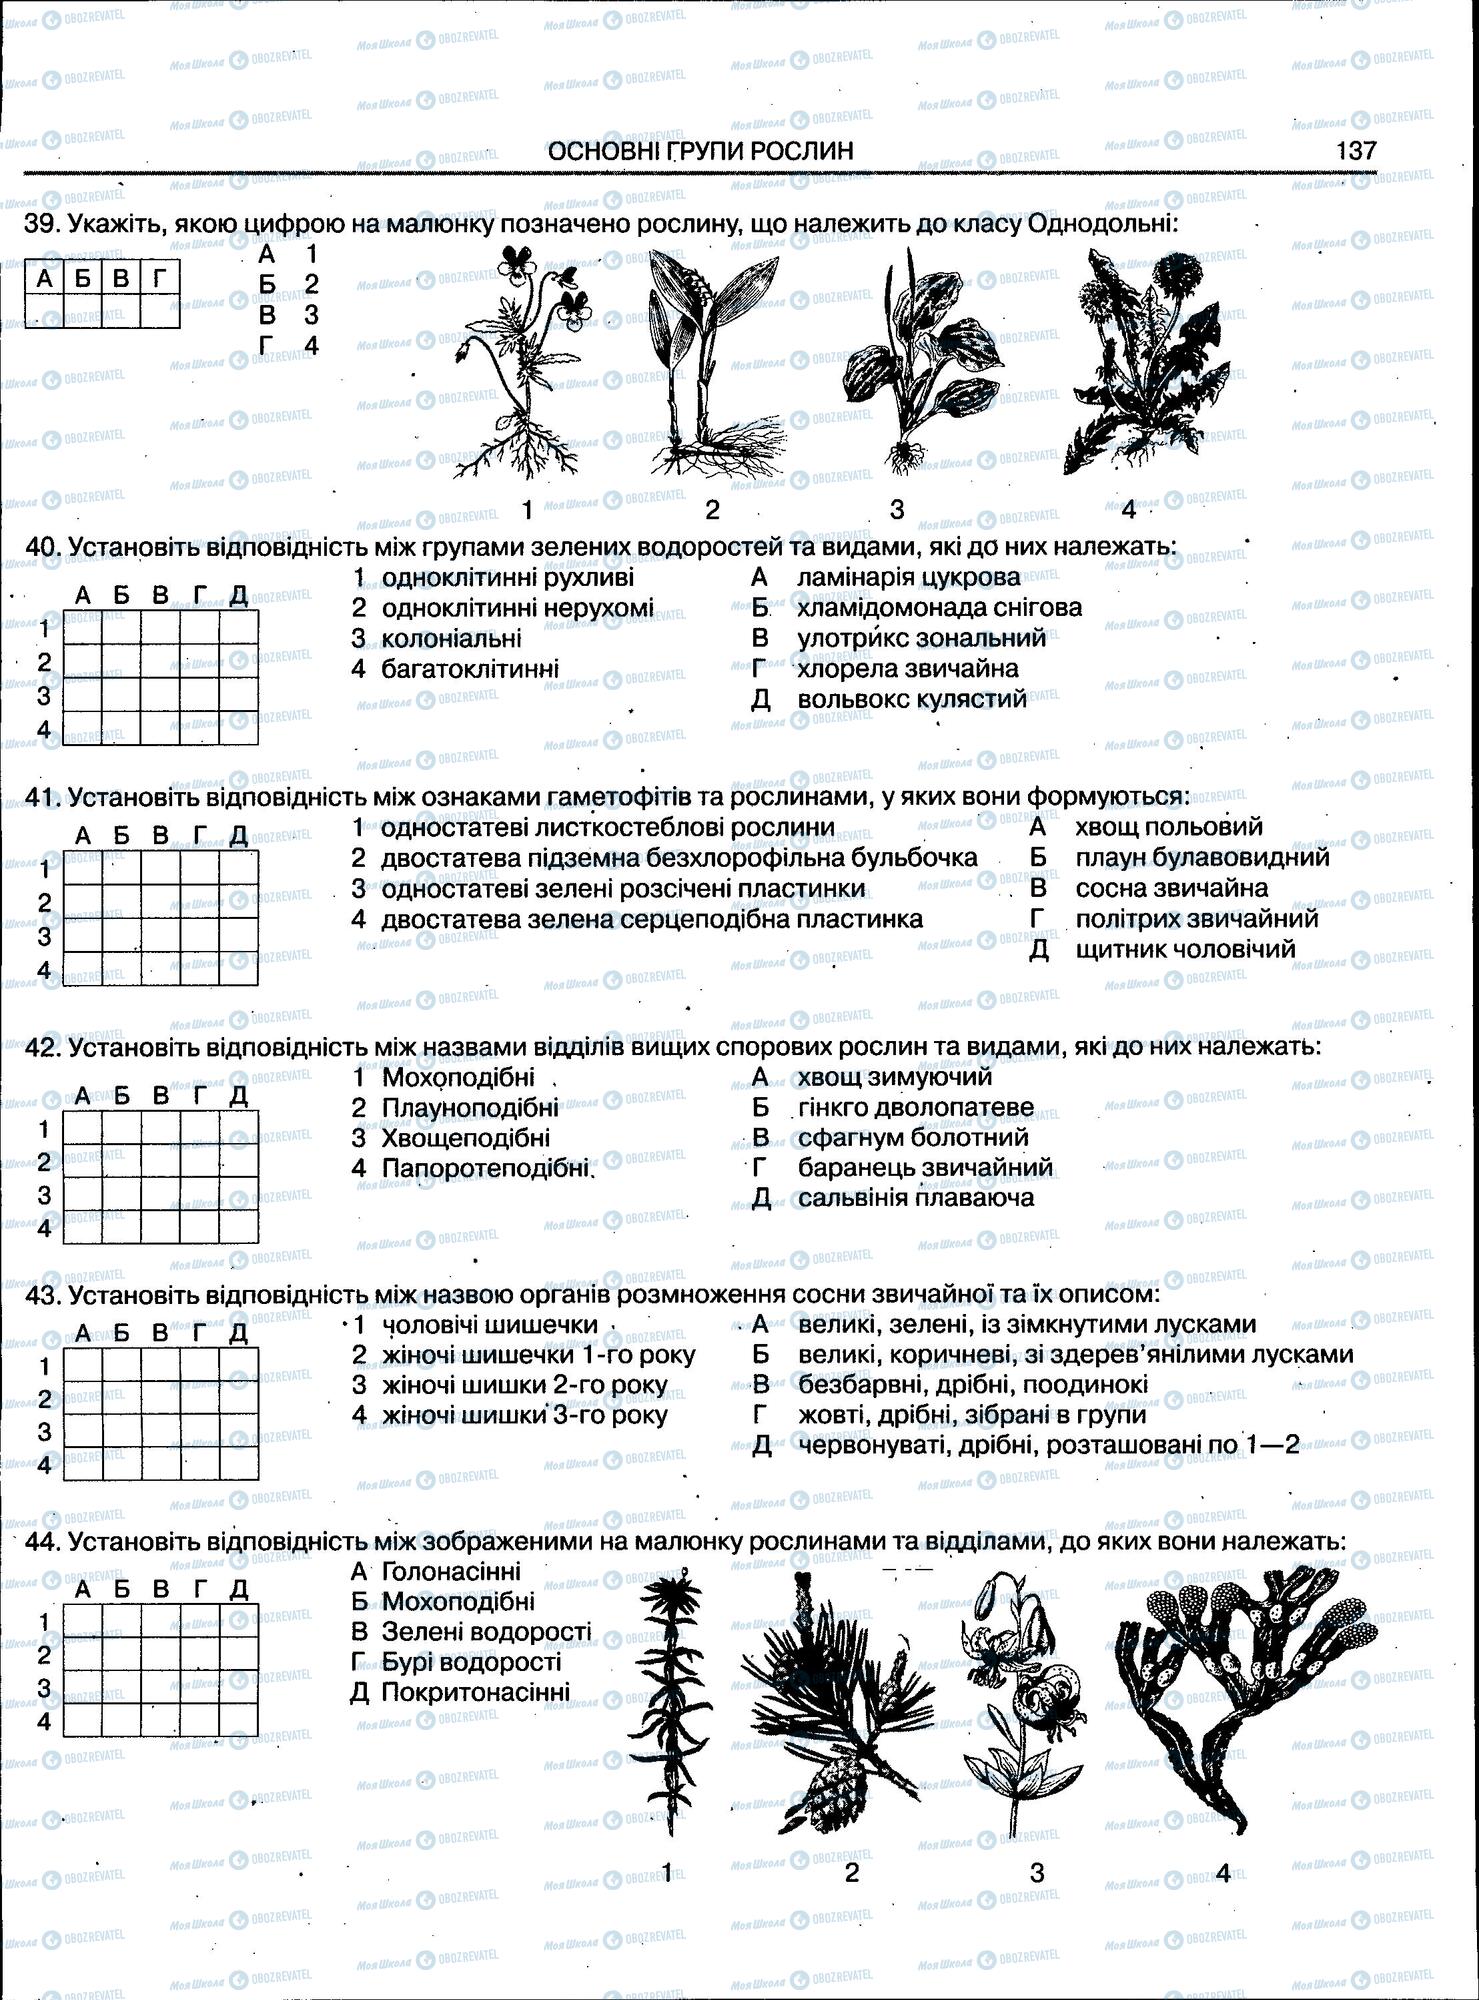 ЗНО Биология 11 класс страница 138